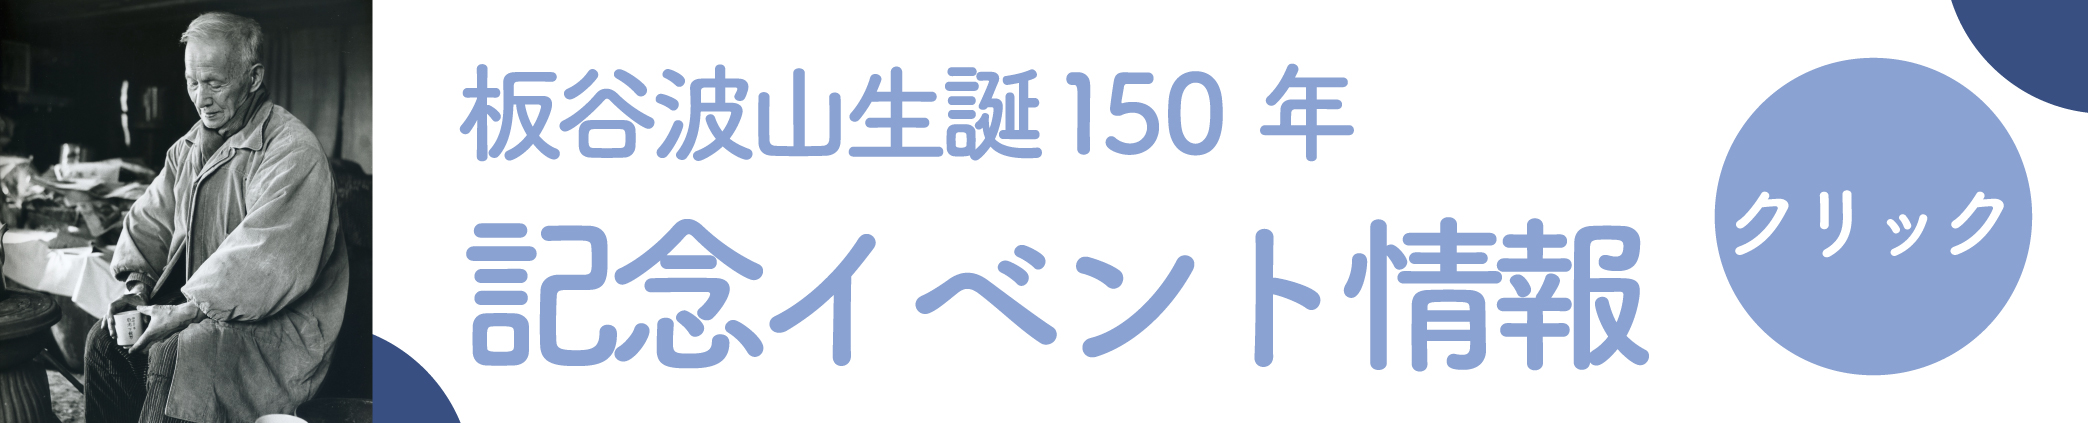 板谷波山生誕150年記念イベント情報